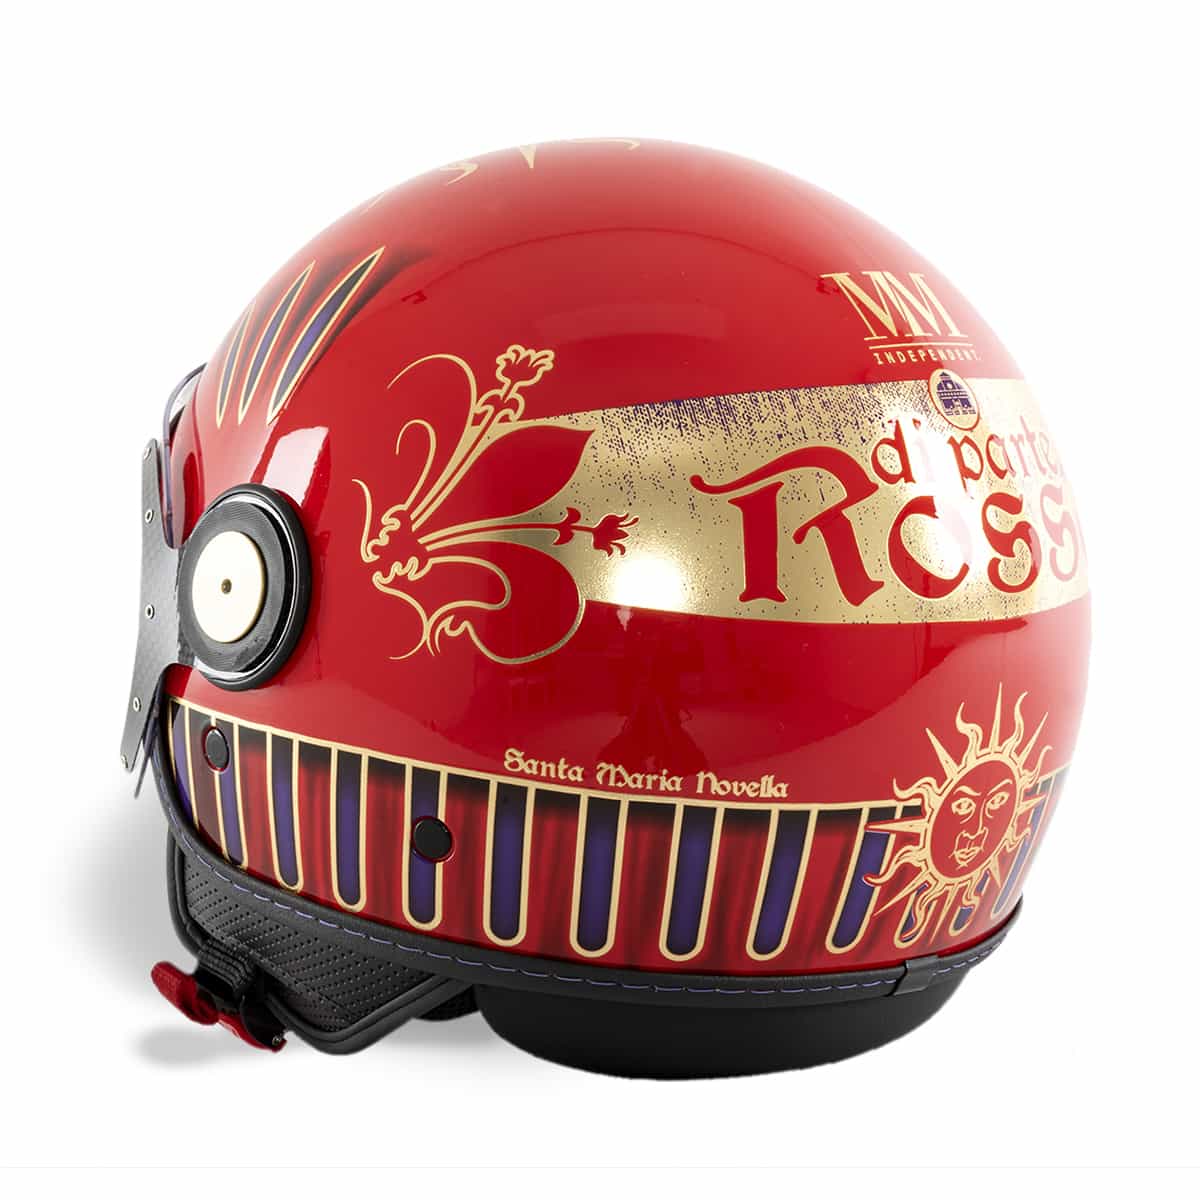 Rossi Helm linke Seitenansicht